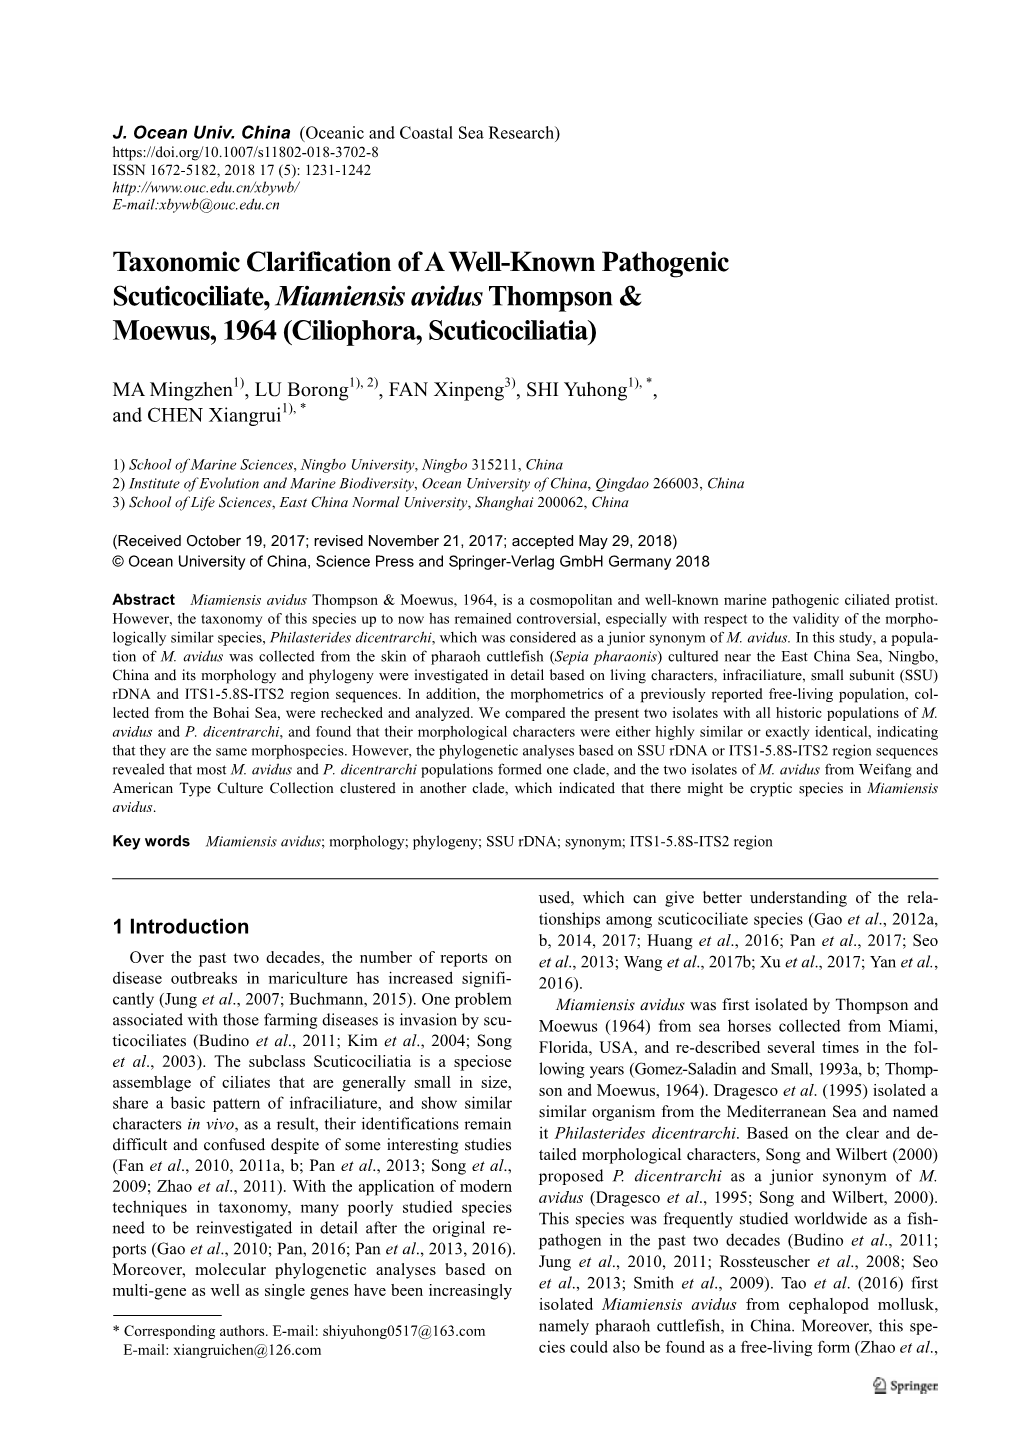 Taxonomic Clarification of a Well-Known Pathogenic Scuticociliate, Miamiensis Avidus Thompson & Moewus, 1964 (Ciliophora, Scuticociliatia)